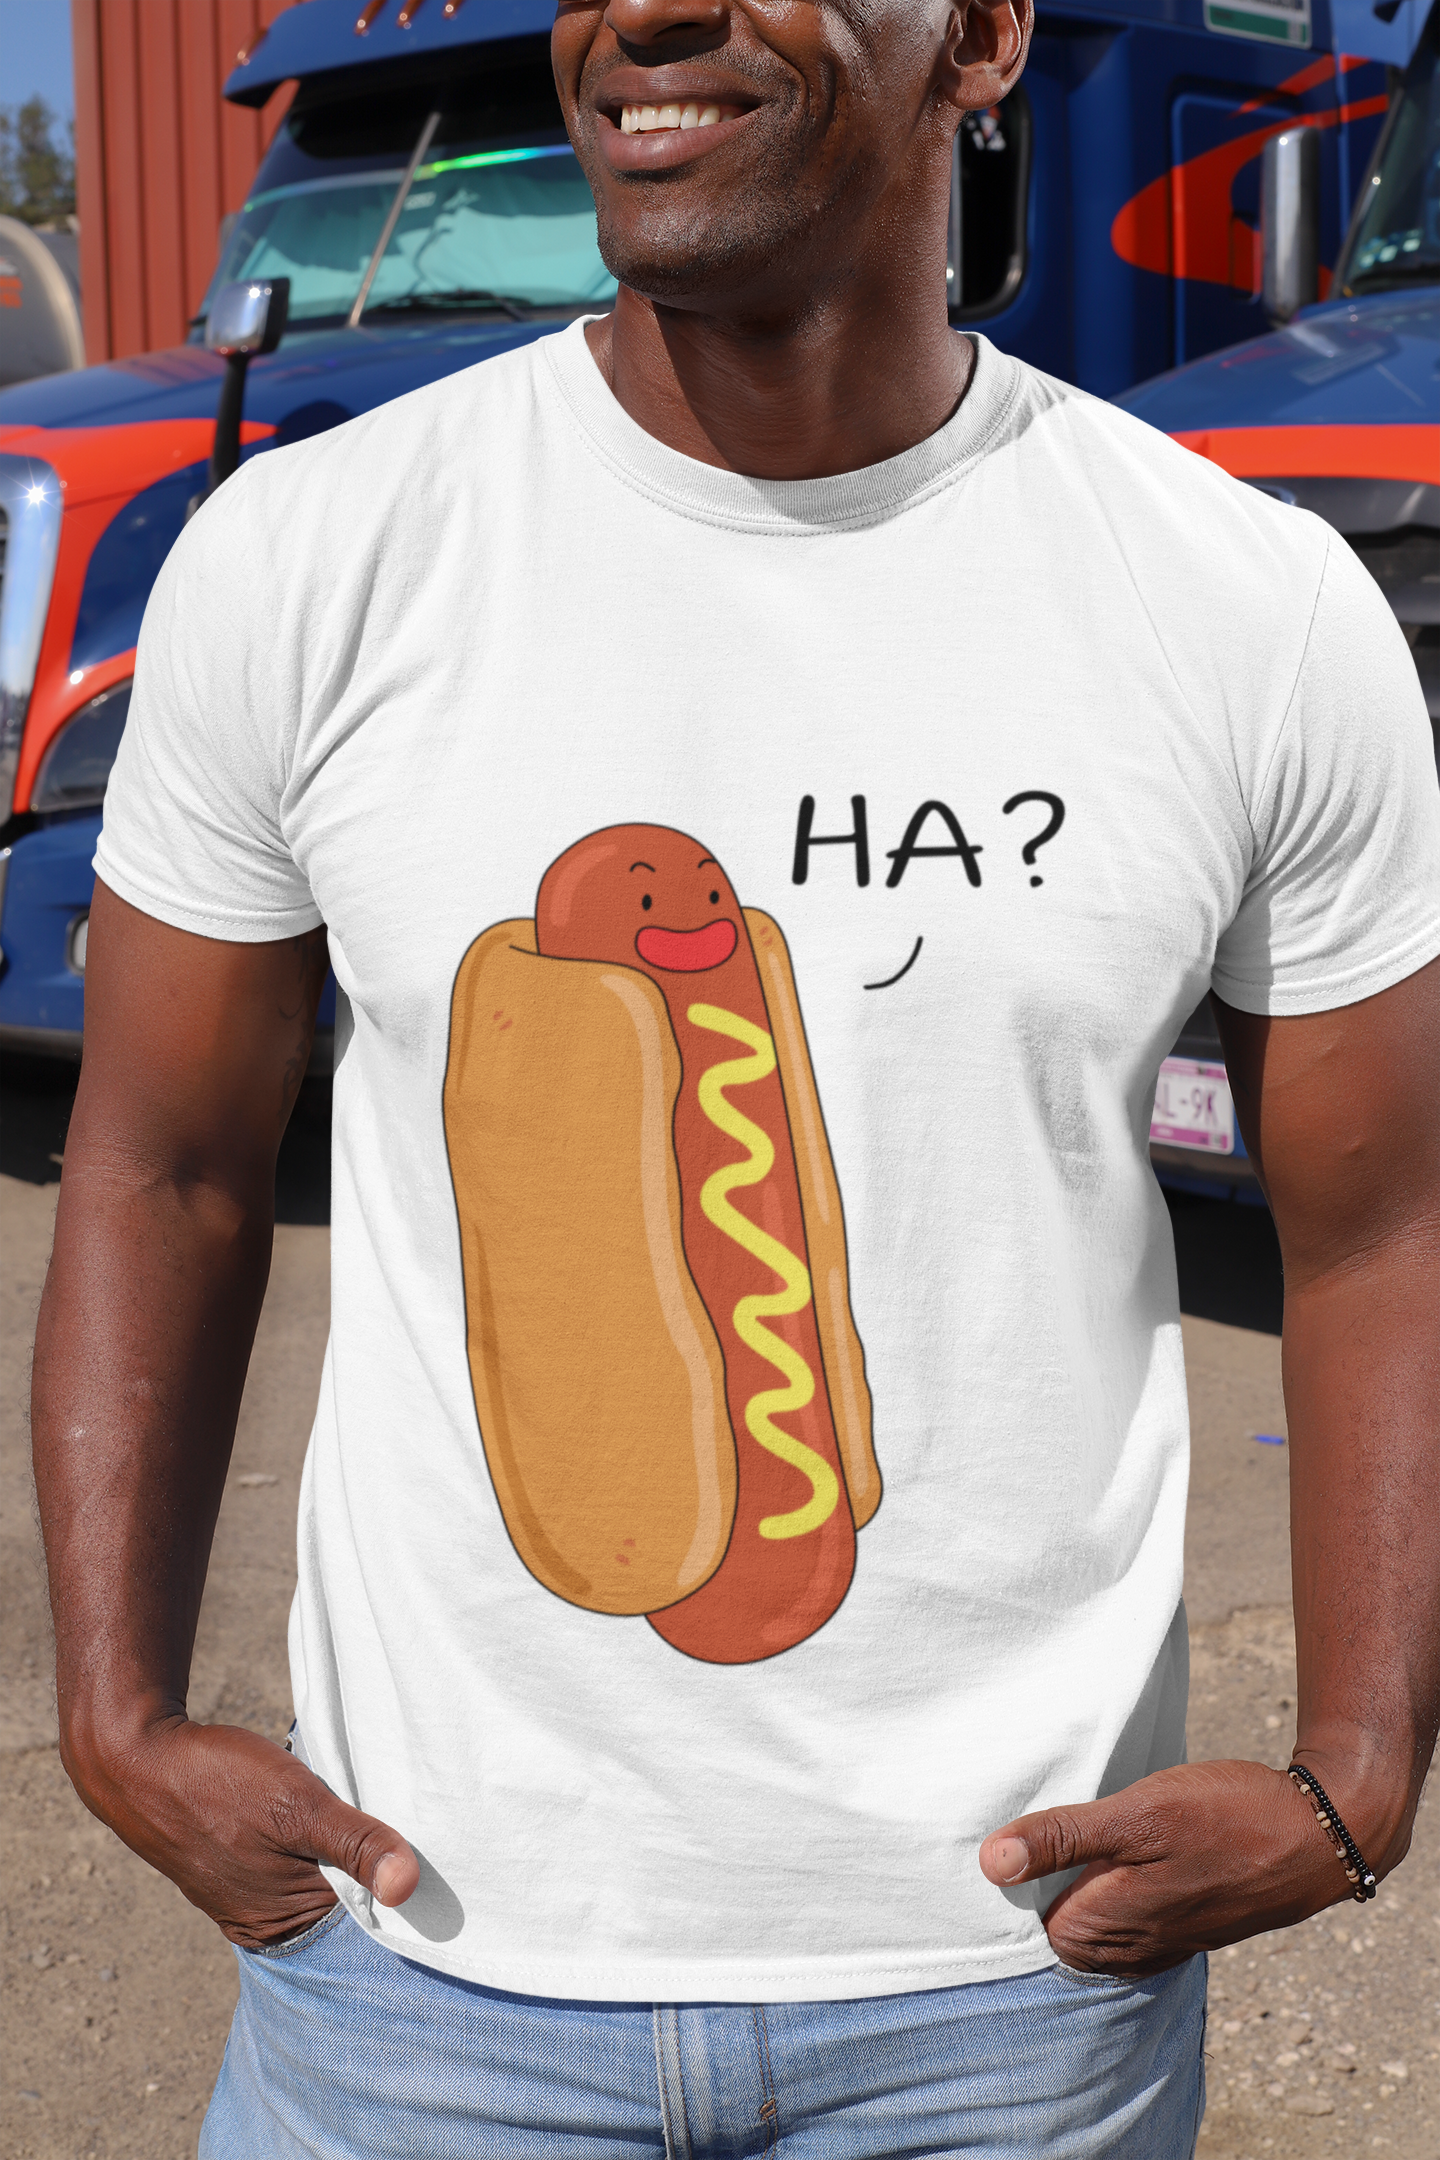 Hotdog Ha karitoon shirt